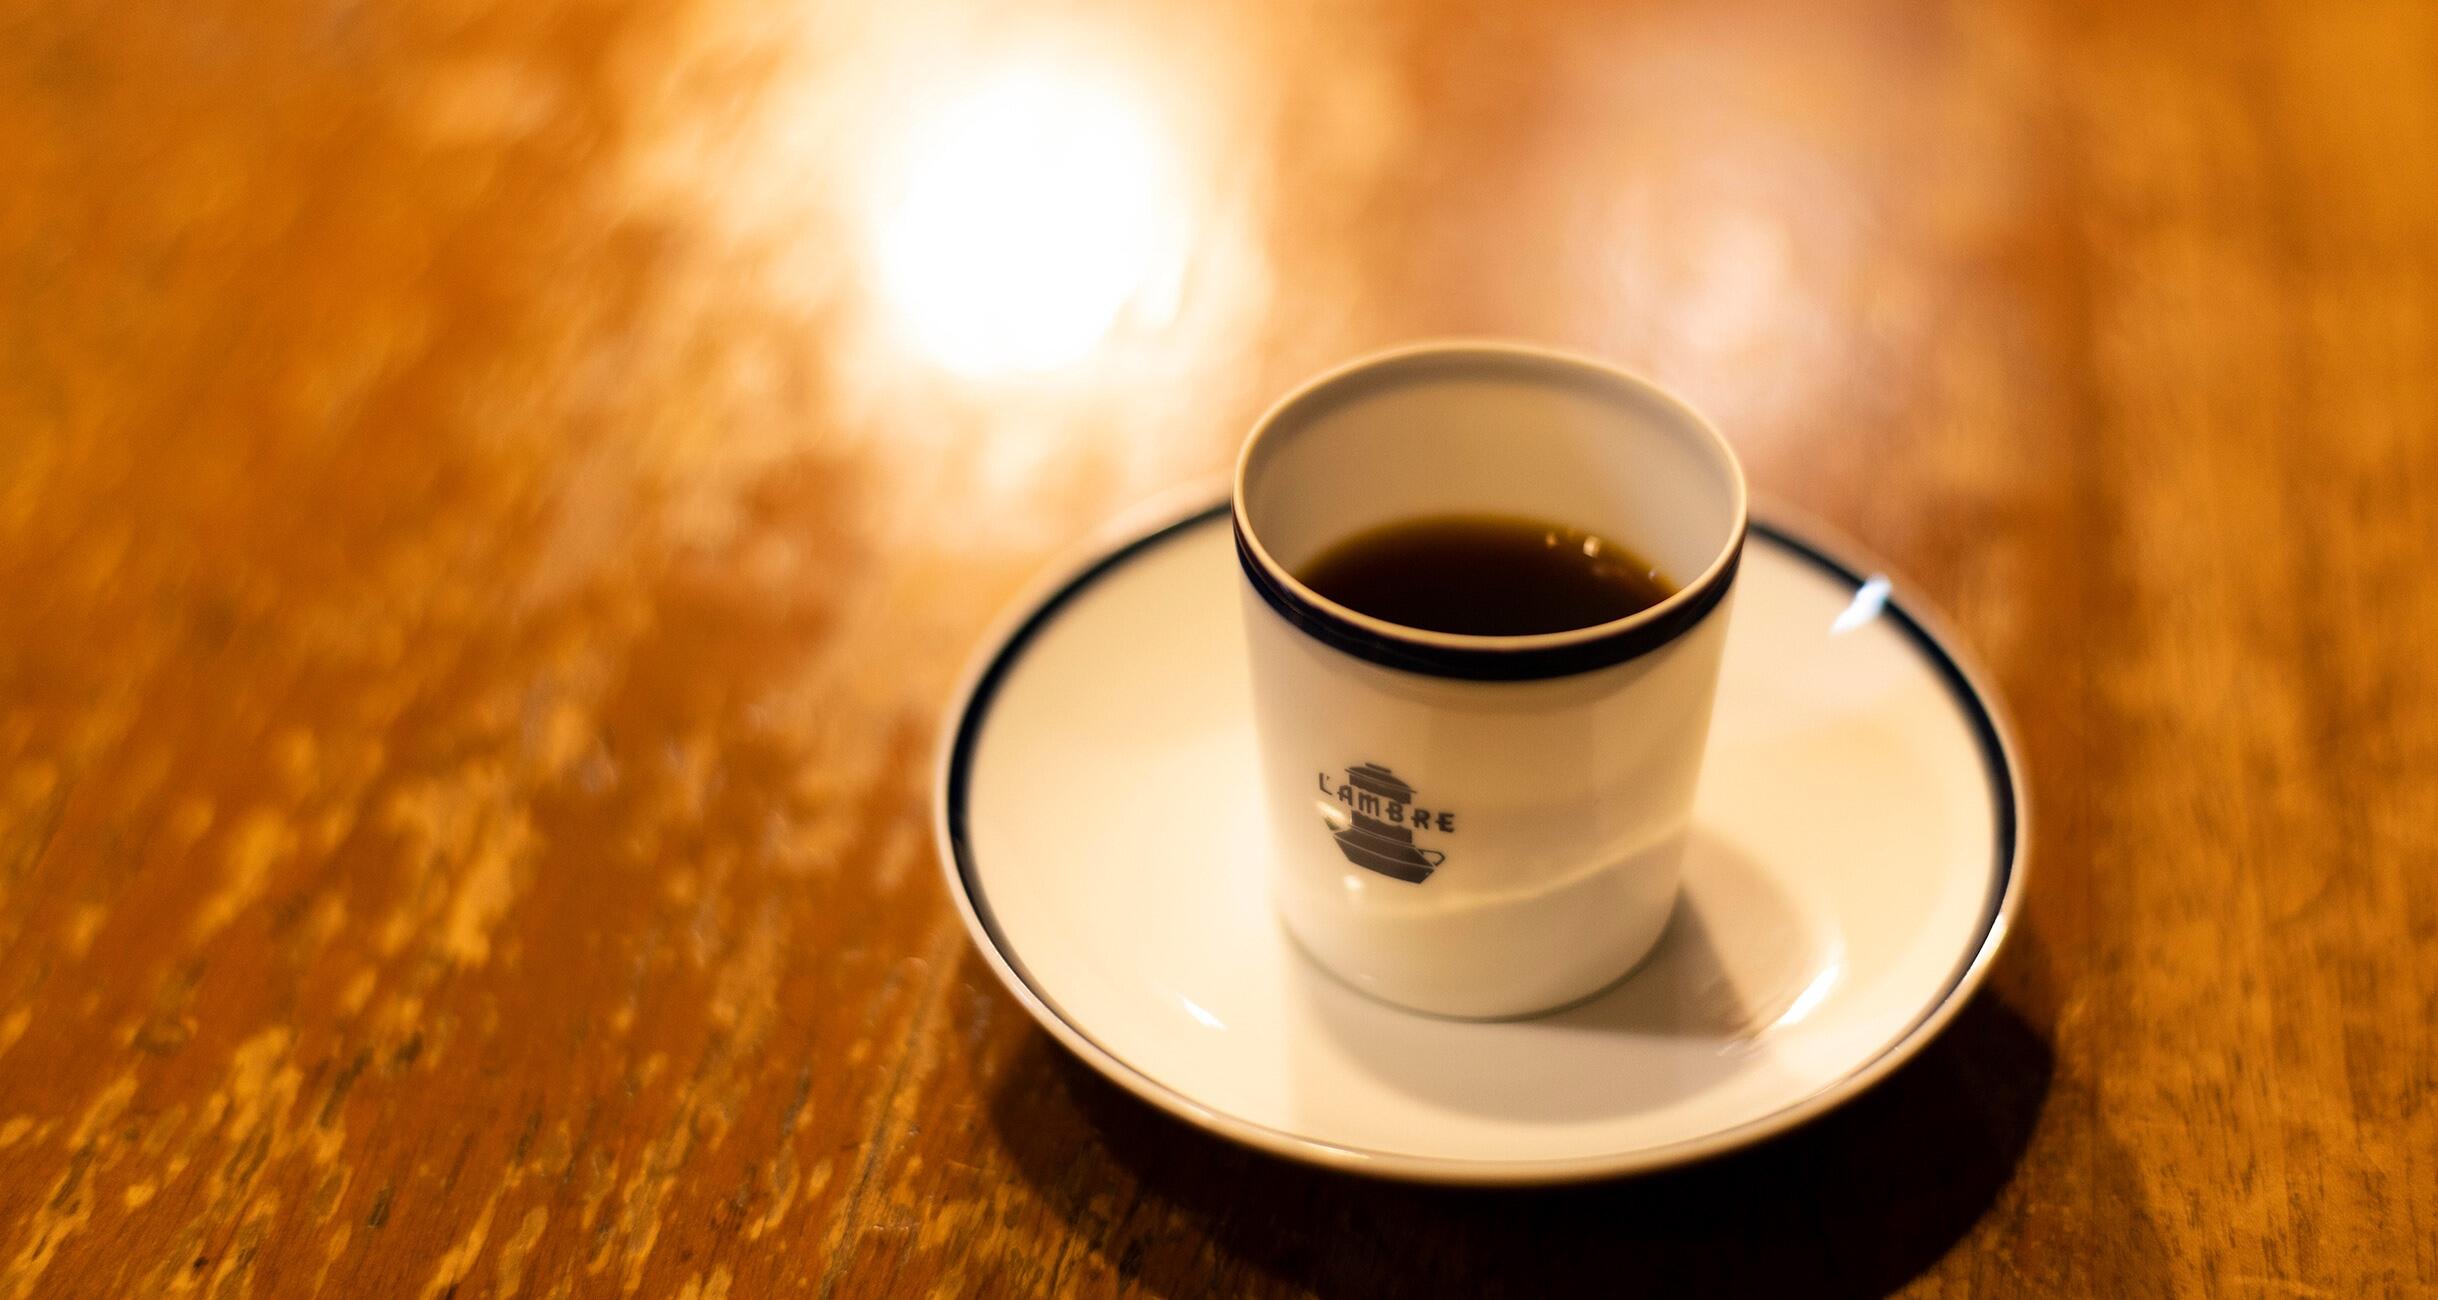 銀座「カフェ・ド・ランブル」は、一杯のコーヒーのために全身 